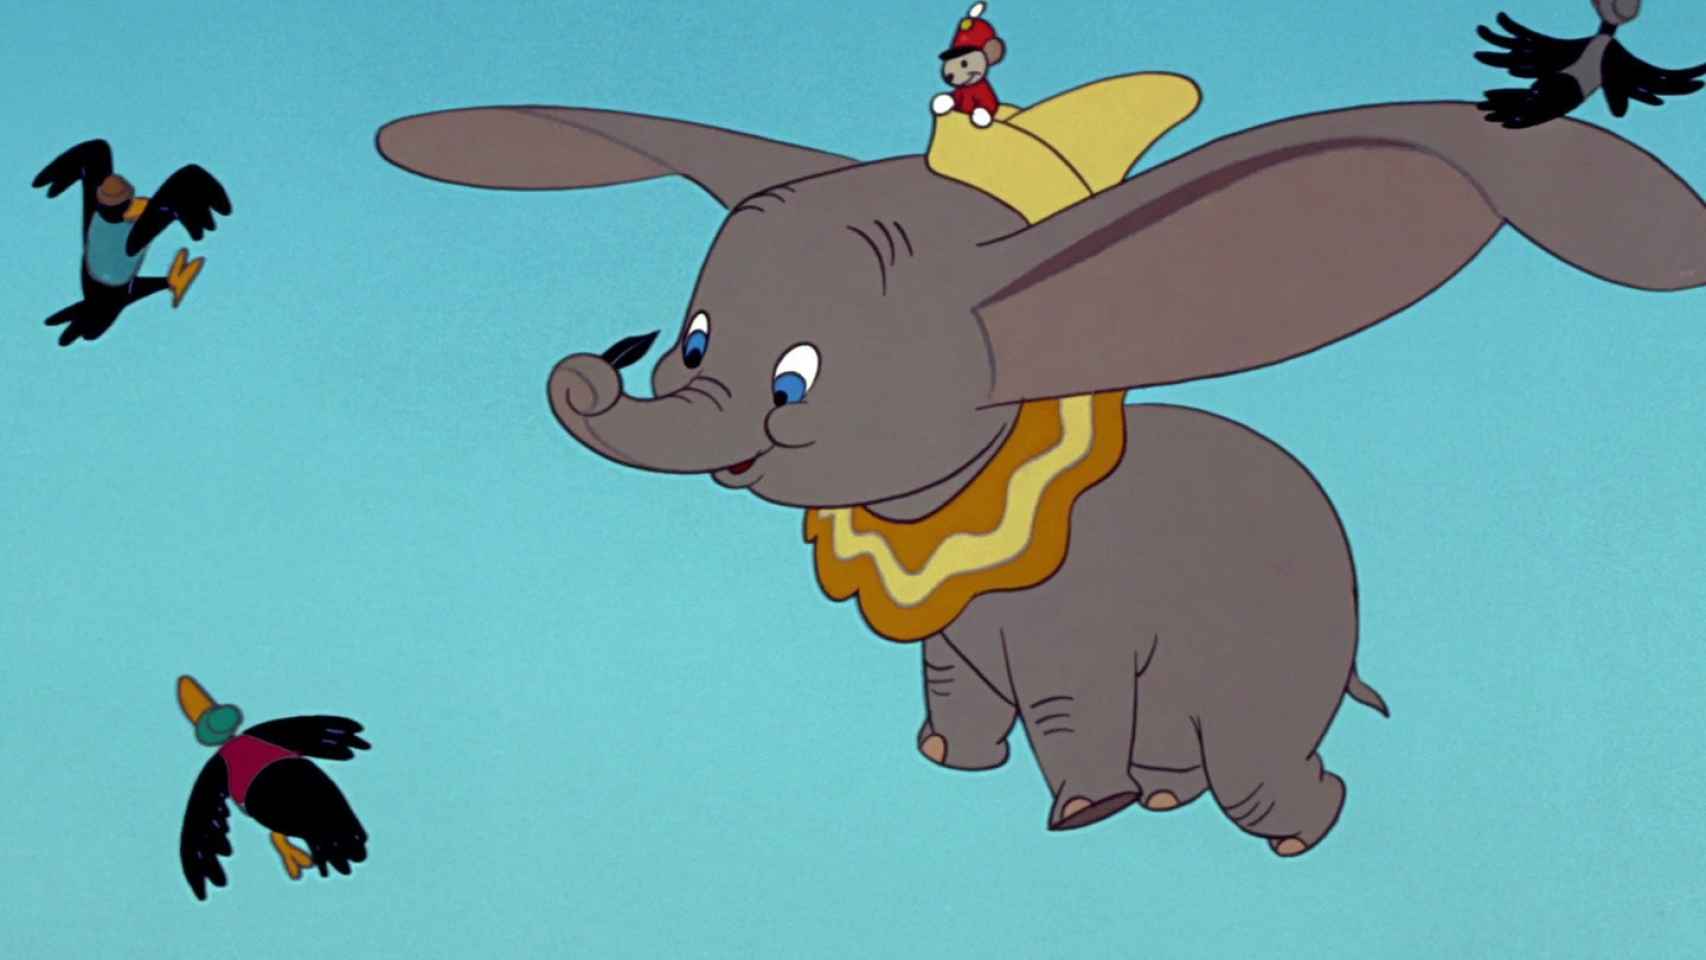 Cuidado, 'Dumbo' y 'Peter Pan' son racistas: Disney advierte errores en sus  viejos clásicos